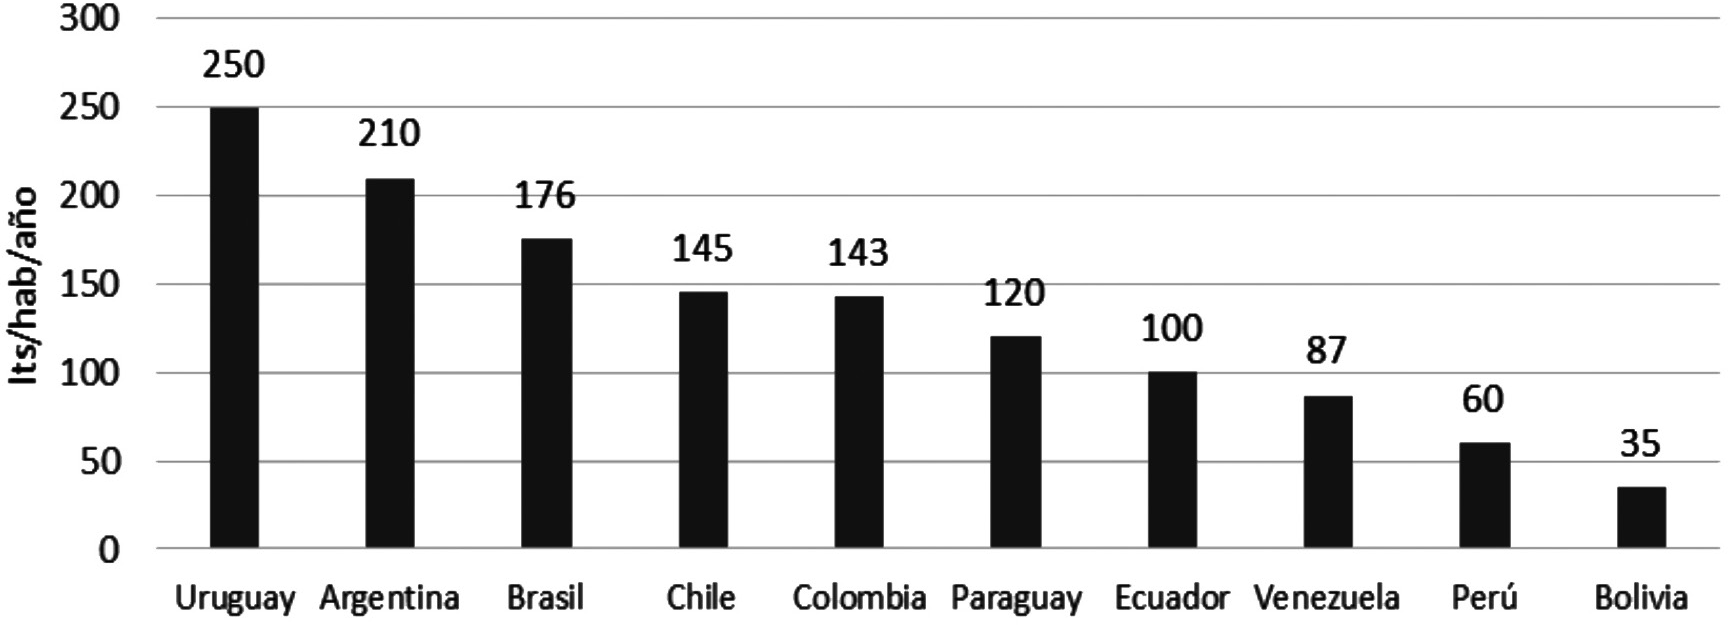 Consumo
per cápita de leche litro/habitante/año en Sudamérica.